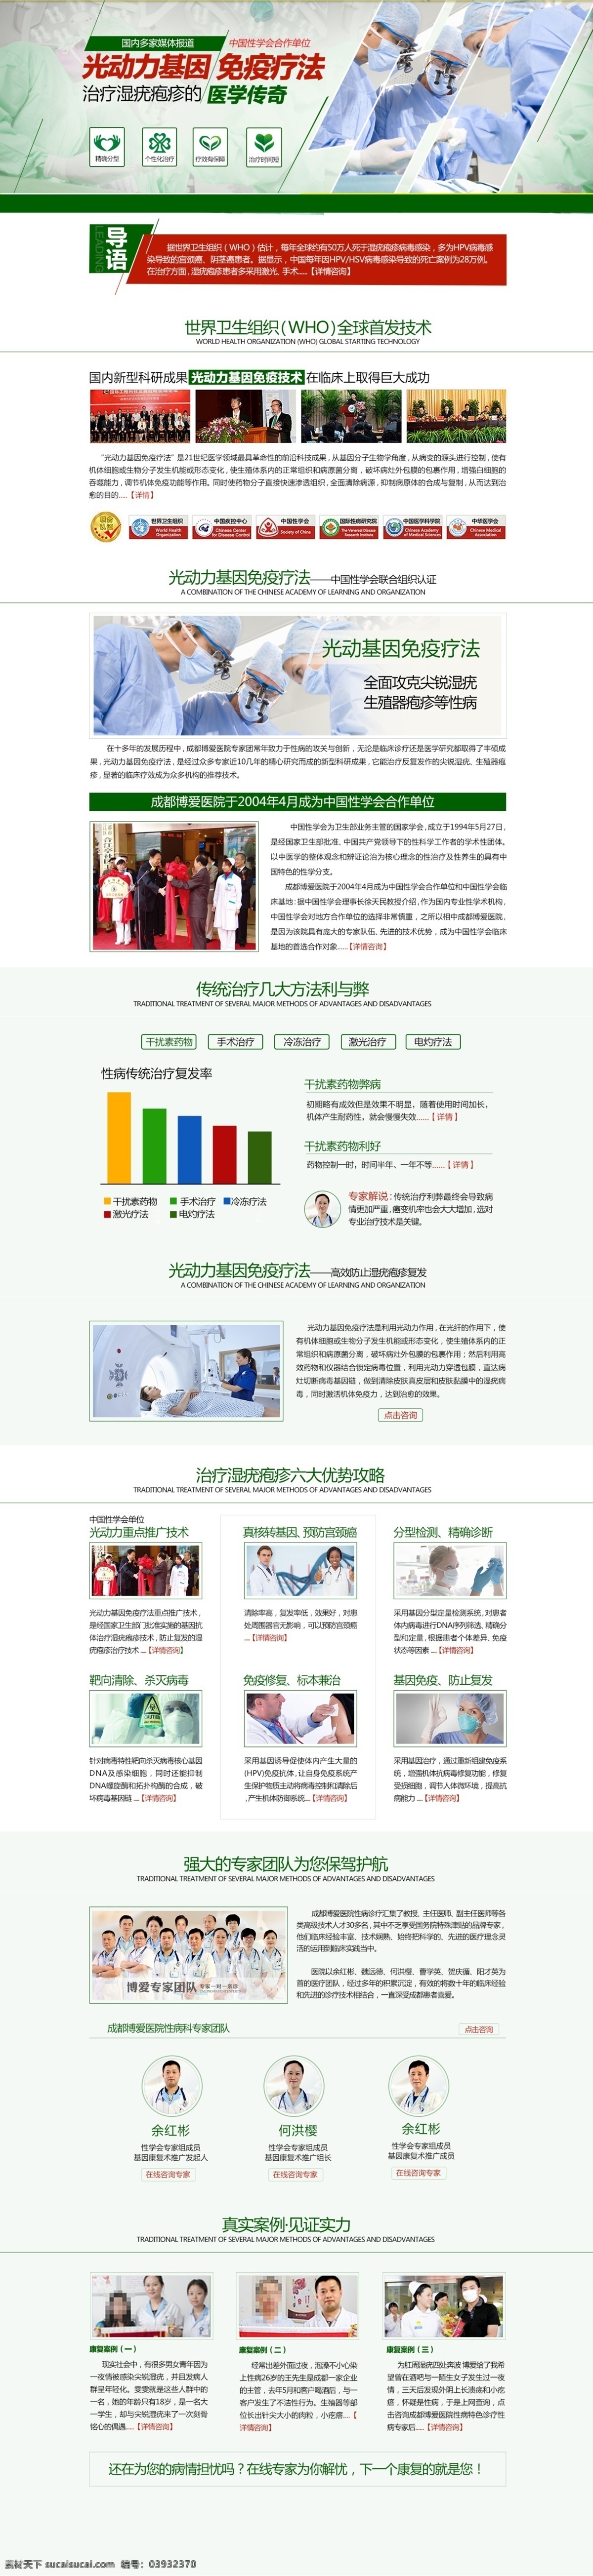 性病专题 性病技术专题 尖锐湿疣 梅毒 生殖器疱疹 网站 web 界面设计 中文模板